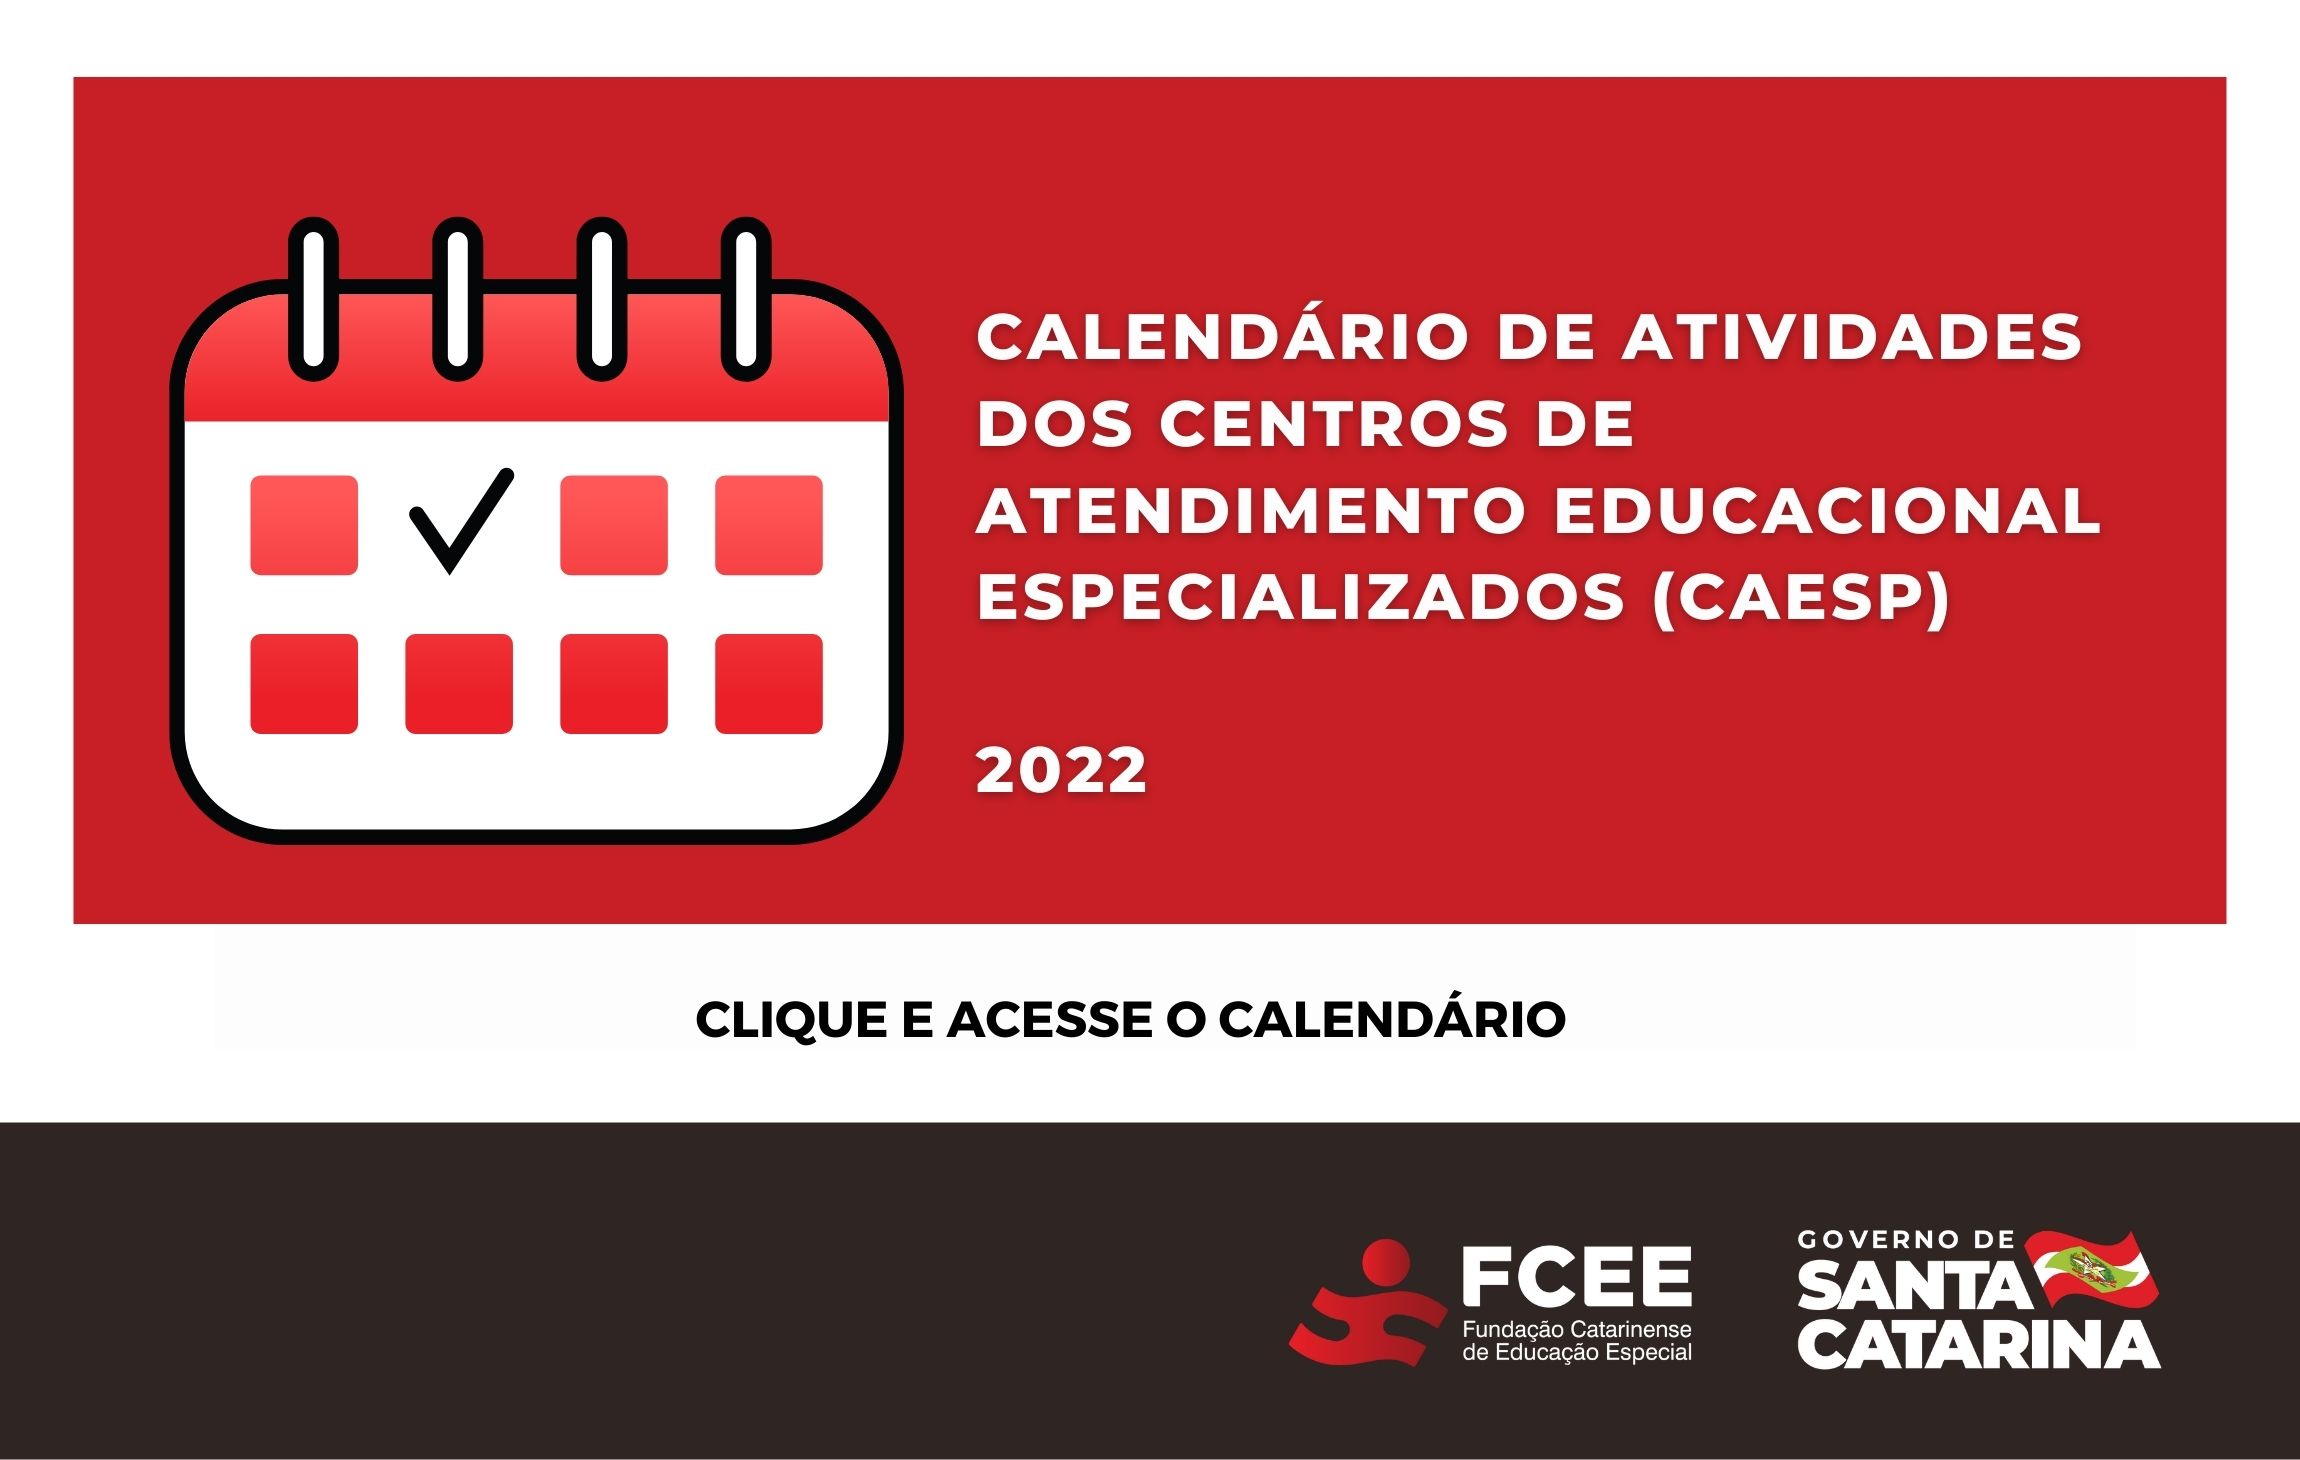 Calendário de Atividades dos Centros de Atendimento Educacional Especializados (CAESPs) para o ano de 2022